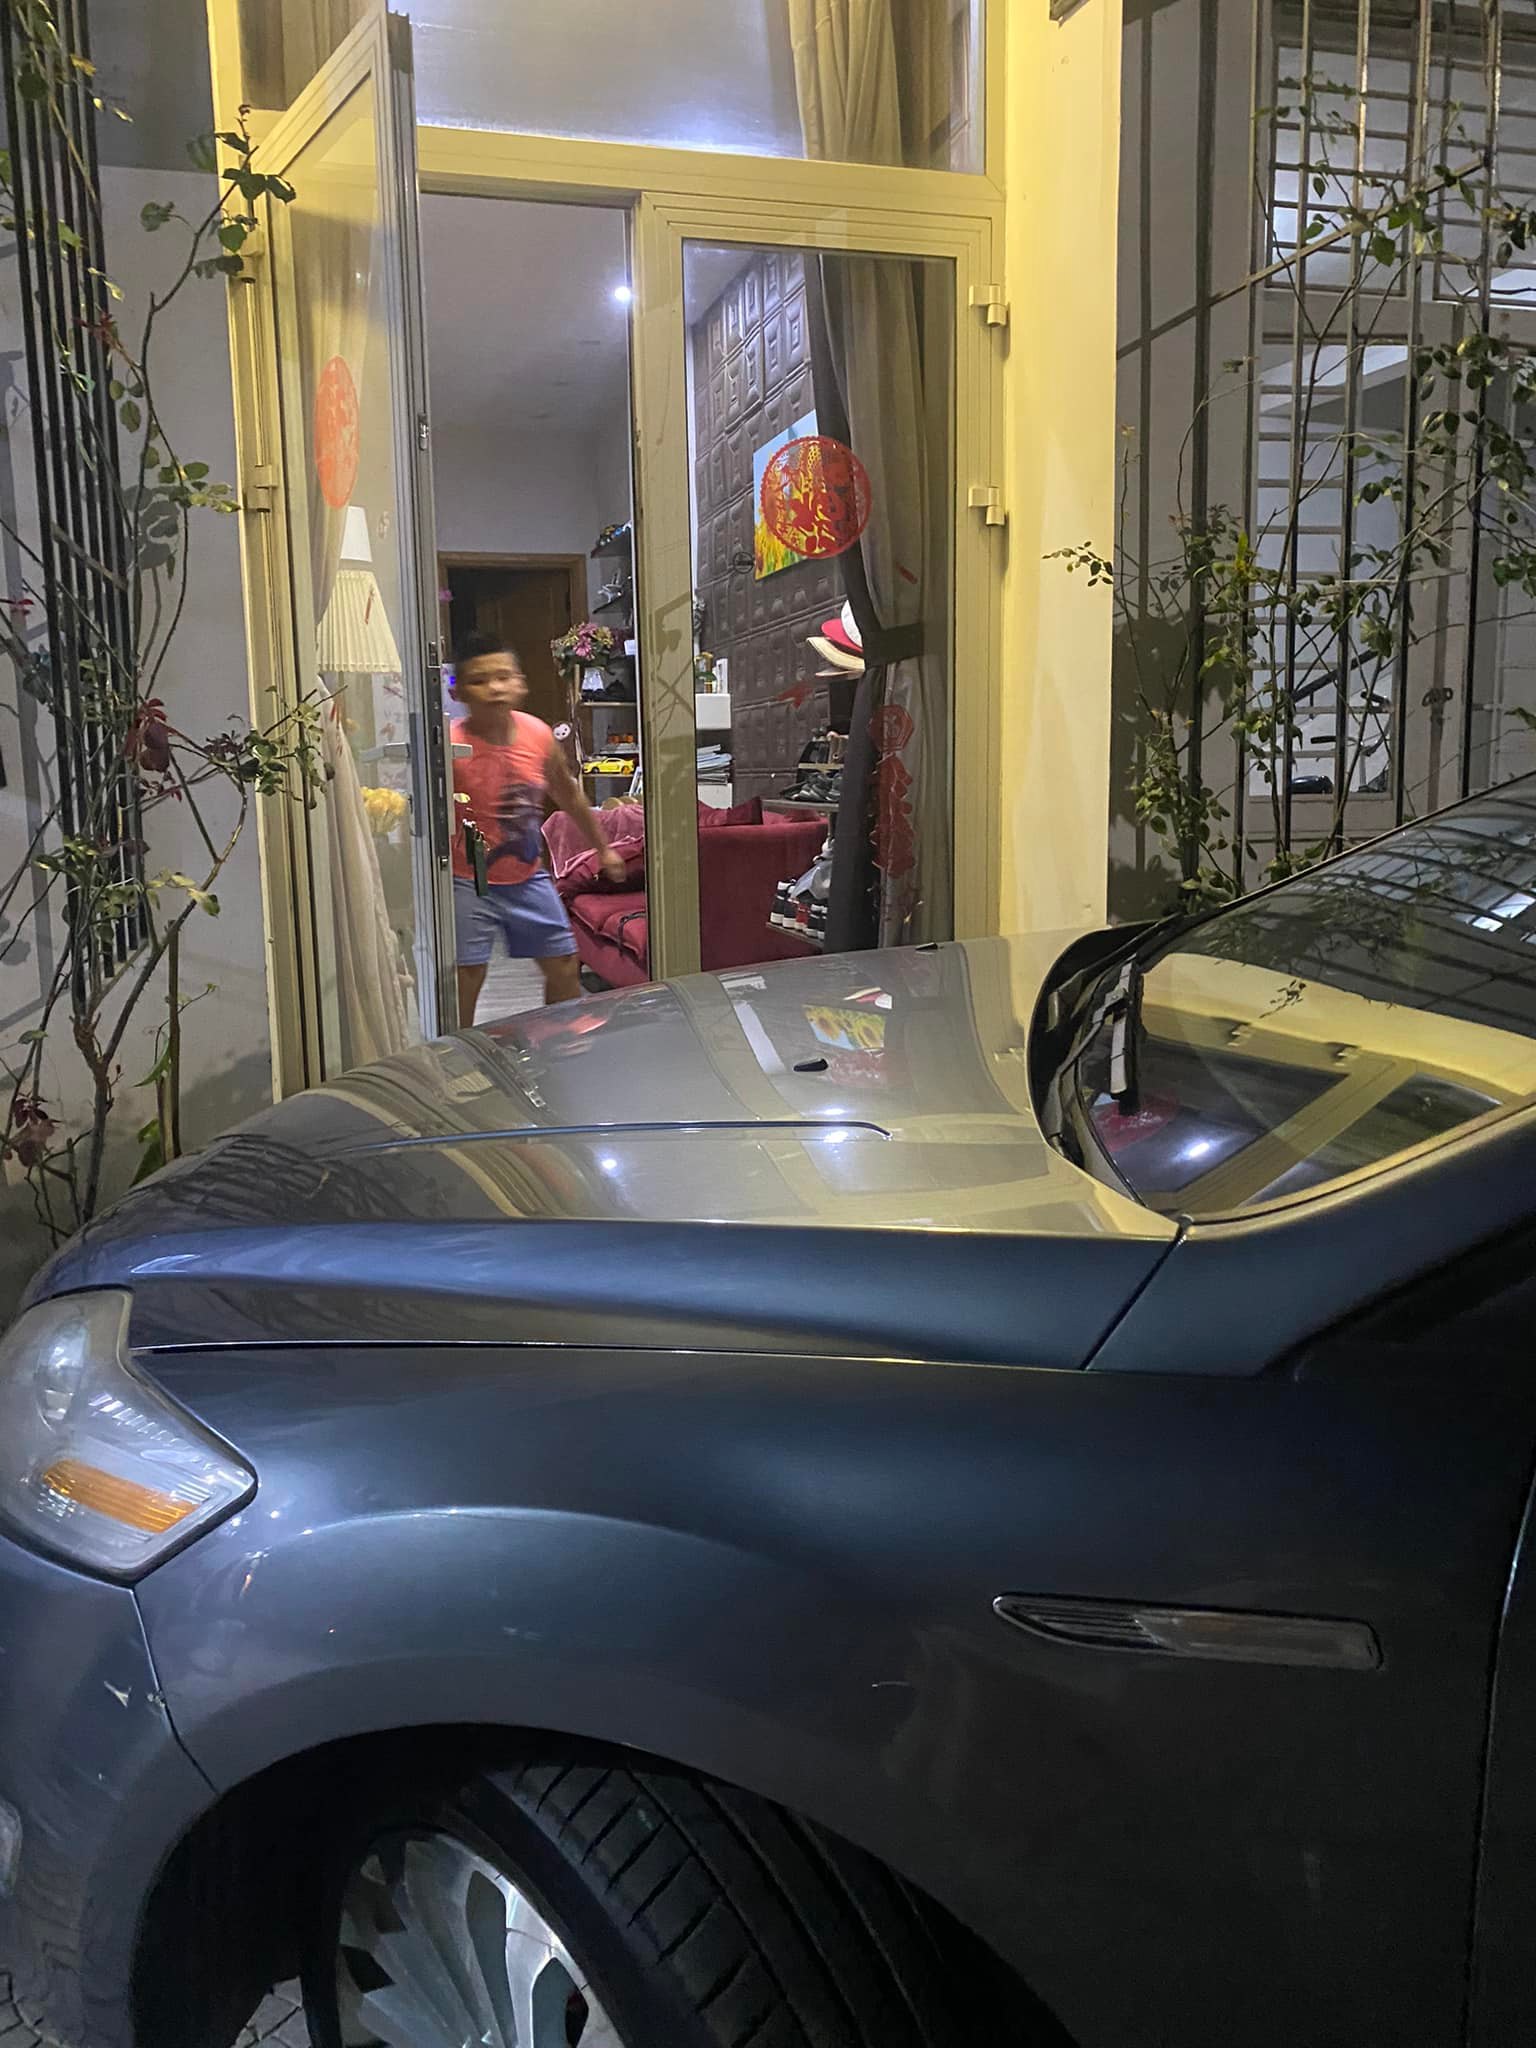 Phó phòng Sở Nội vụ tỉnh Thừa Thiên – Huế thách thức người phụ nữ khi bị phản ánh đậu xe chắn cửa nhà? - Ảnh 4.